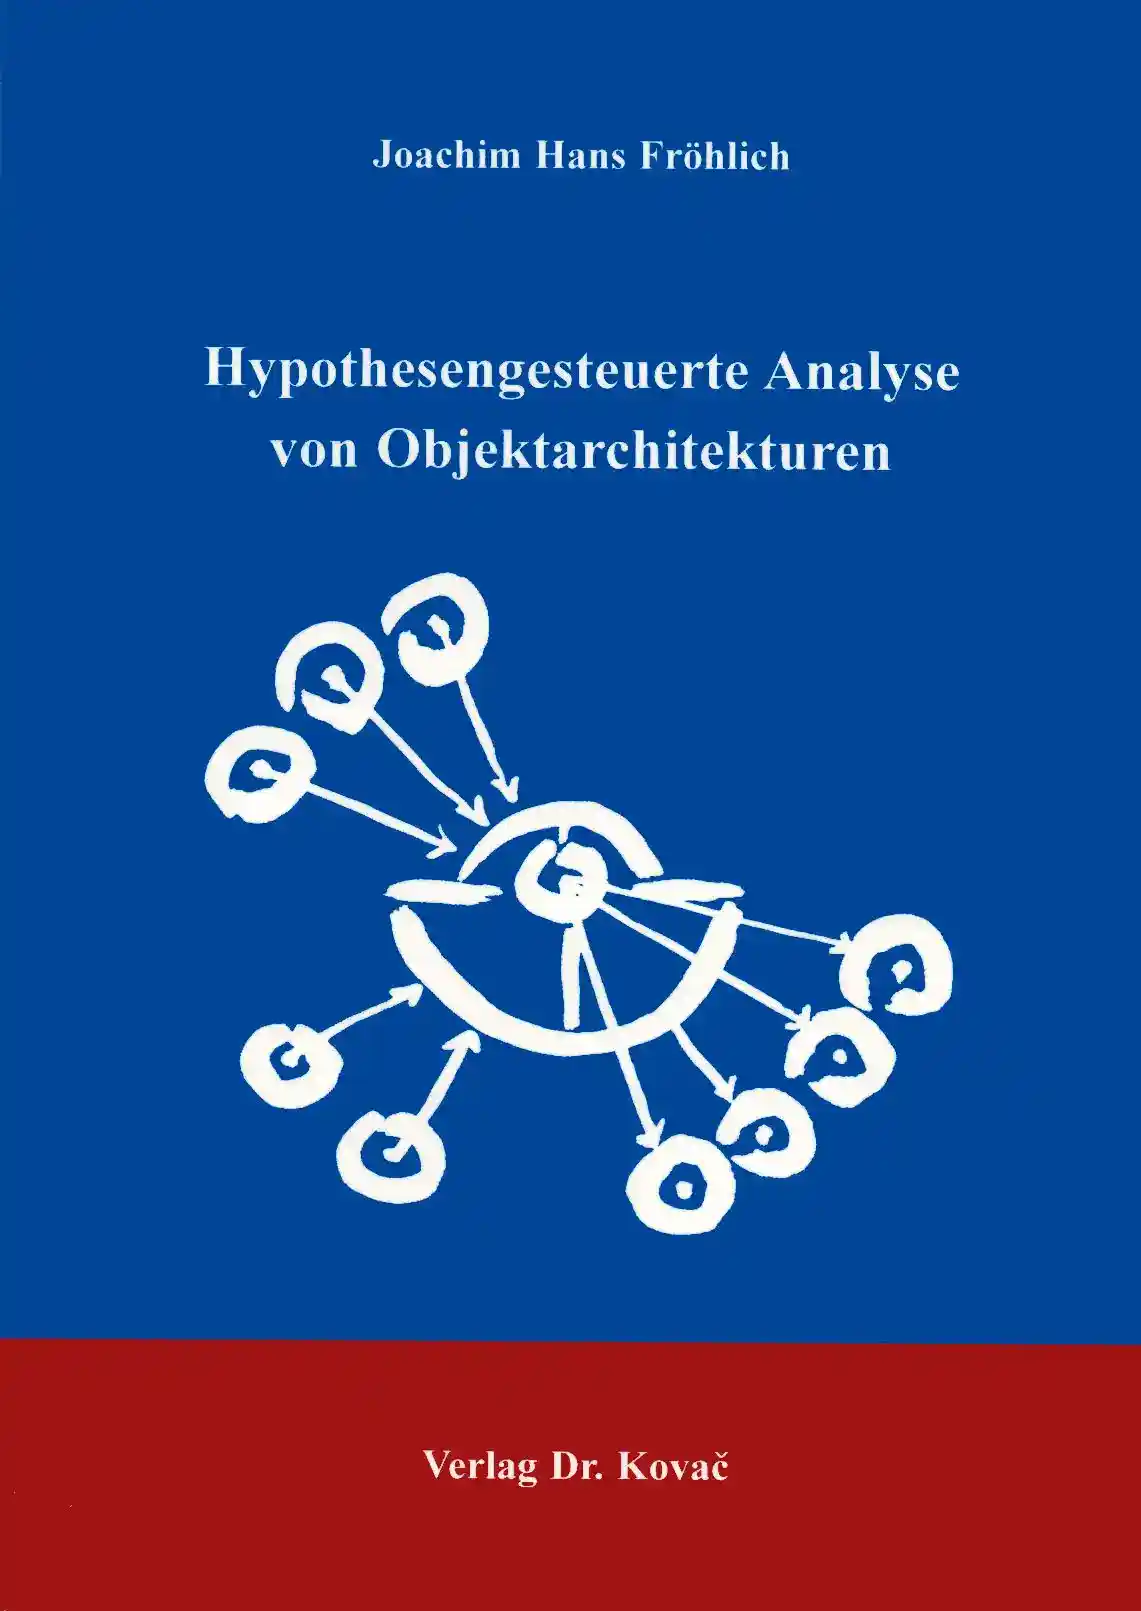 Hypothesengesteuerte Analyse von Objektarchitekturen (Forschungsarbeit)